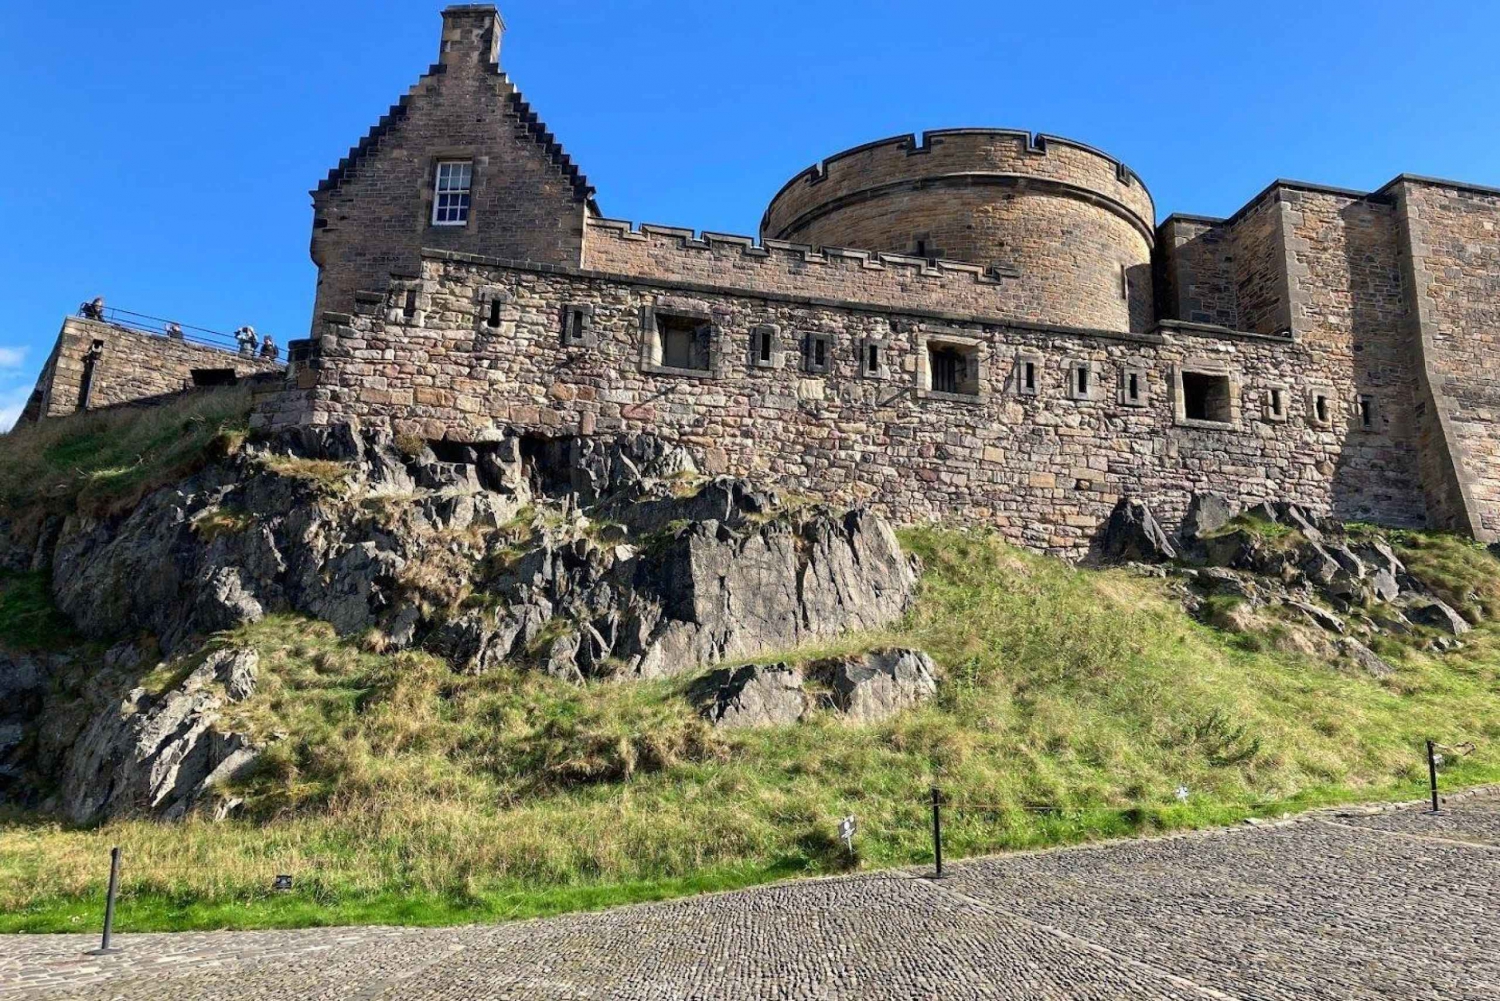 Edinburgh's Haunting Witchcraft Legacy: In-App Audio Tour